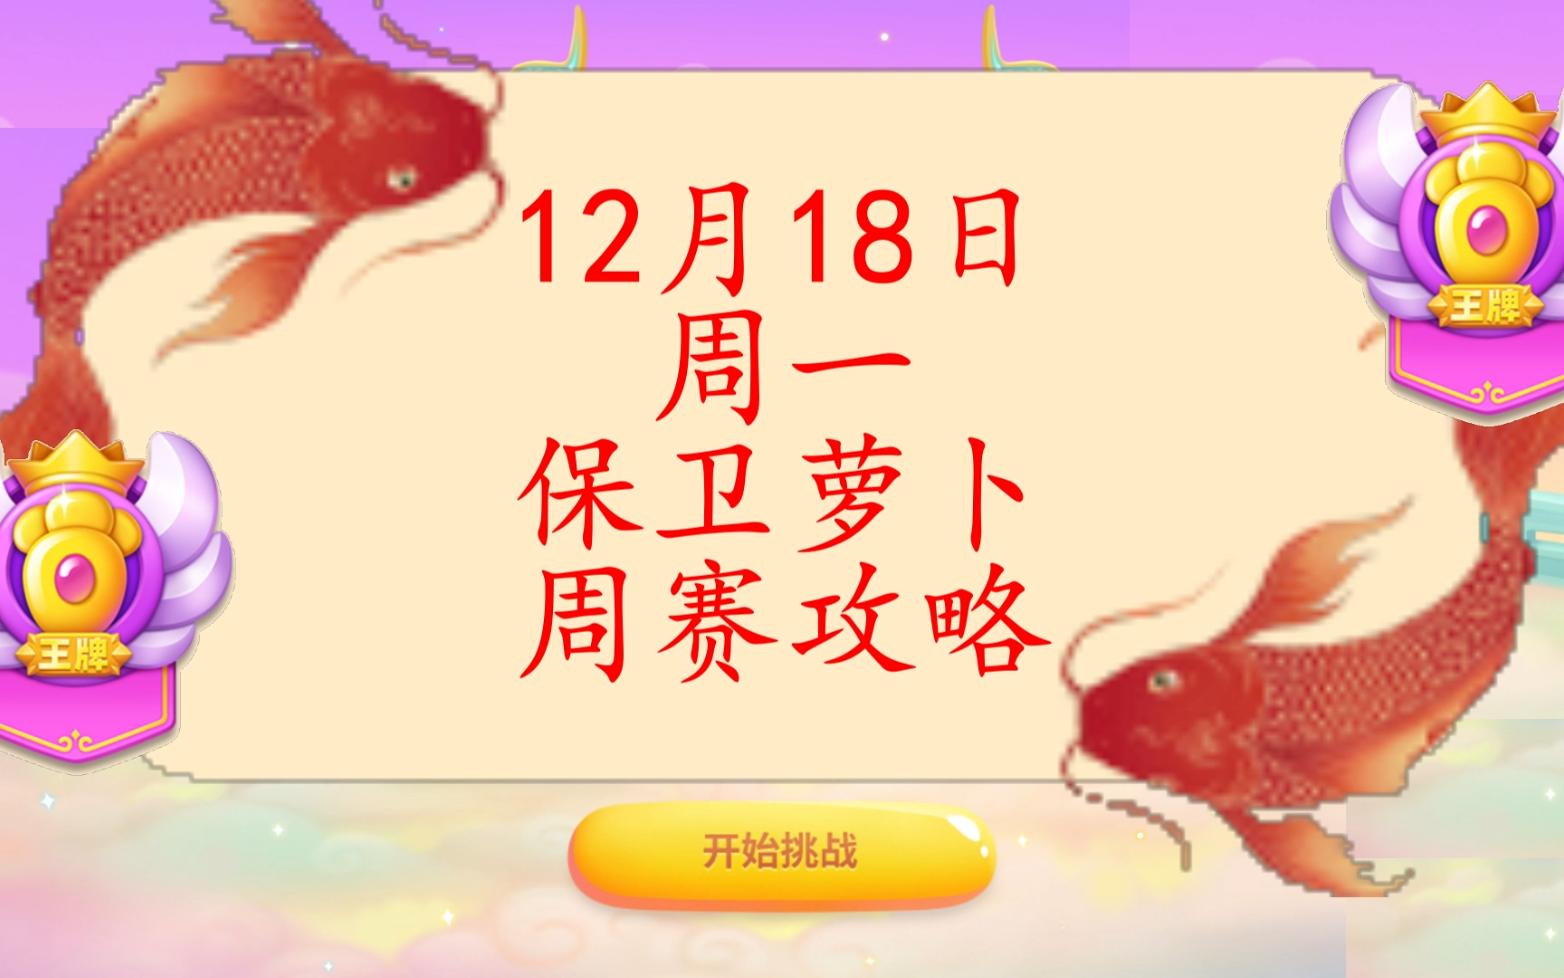 12月18日周一❤️语音攻略【保卫萝卜4周赛】